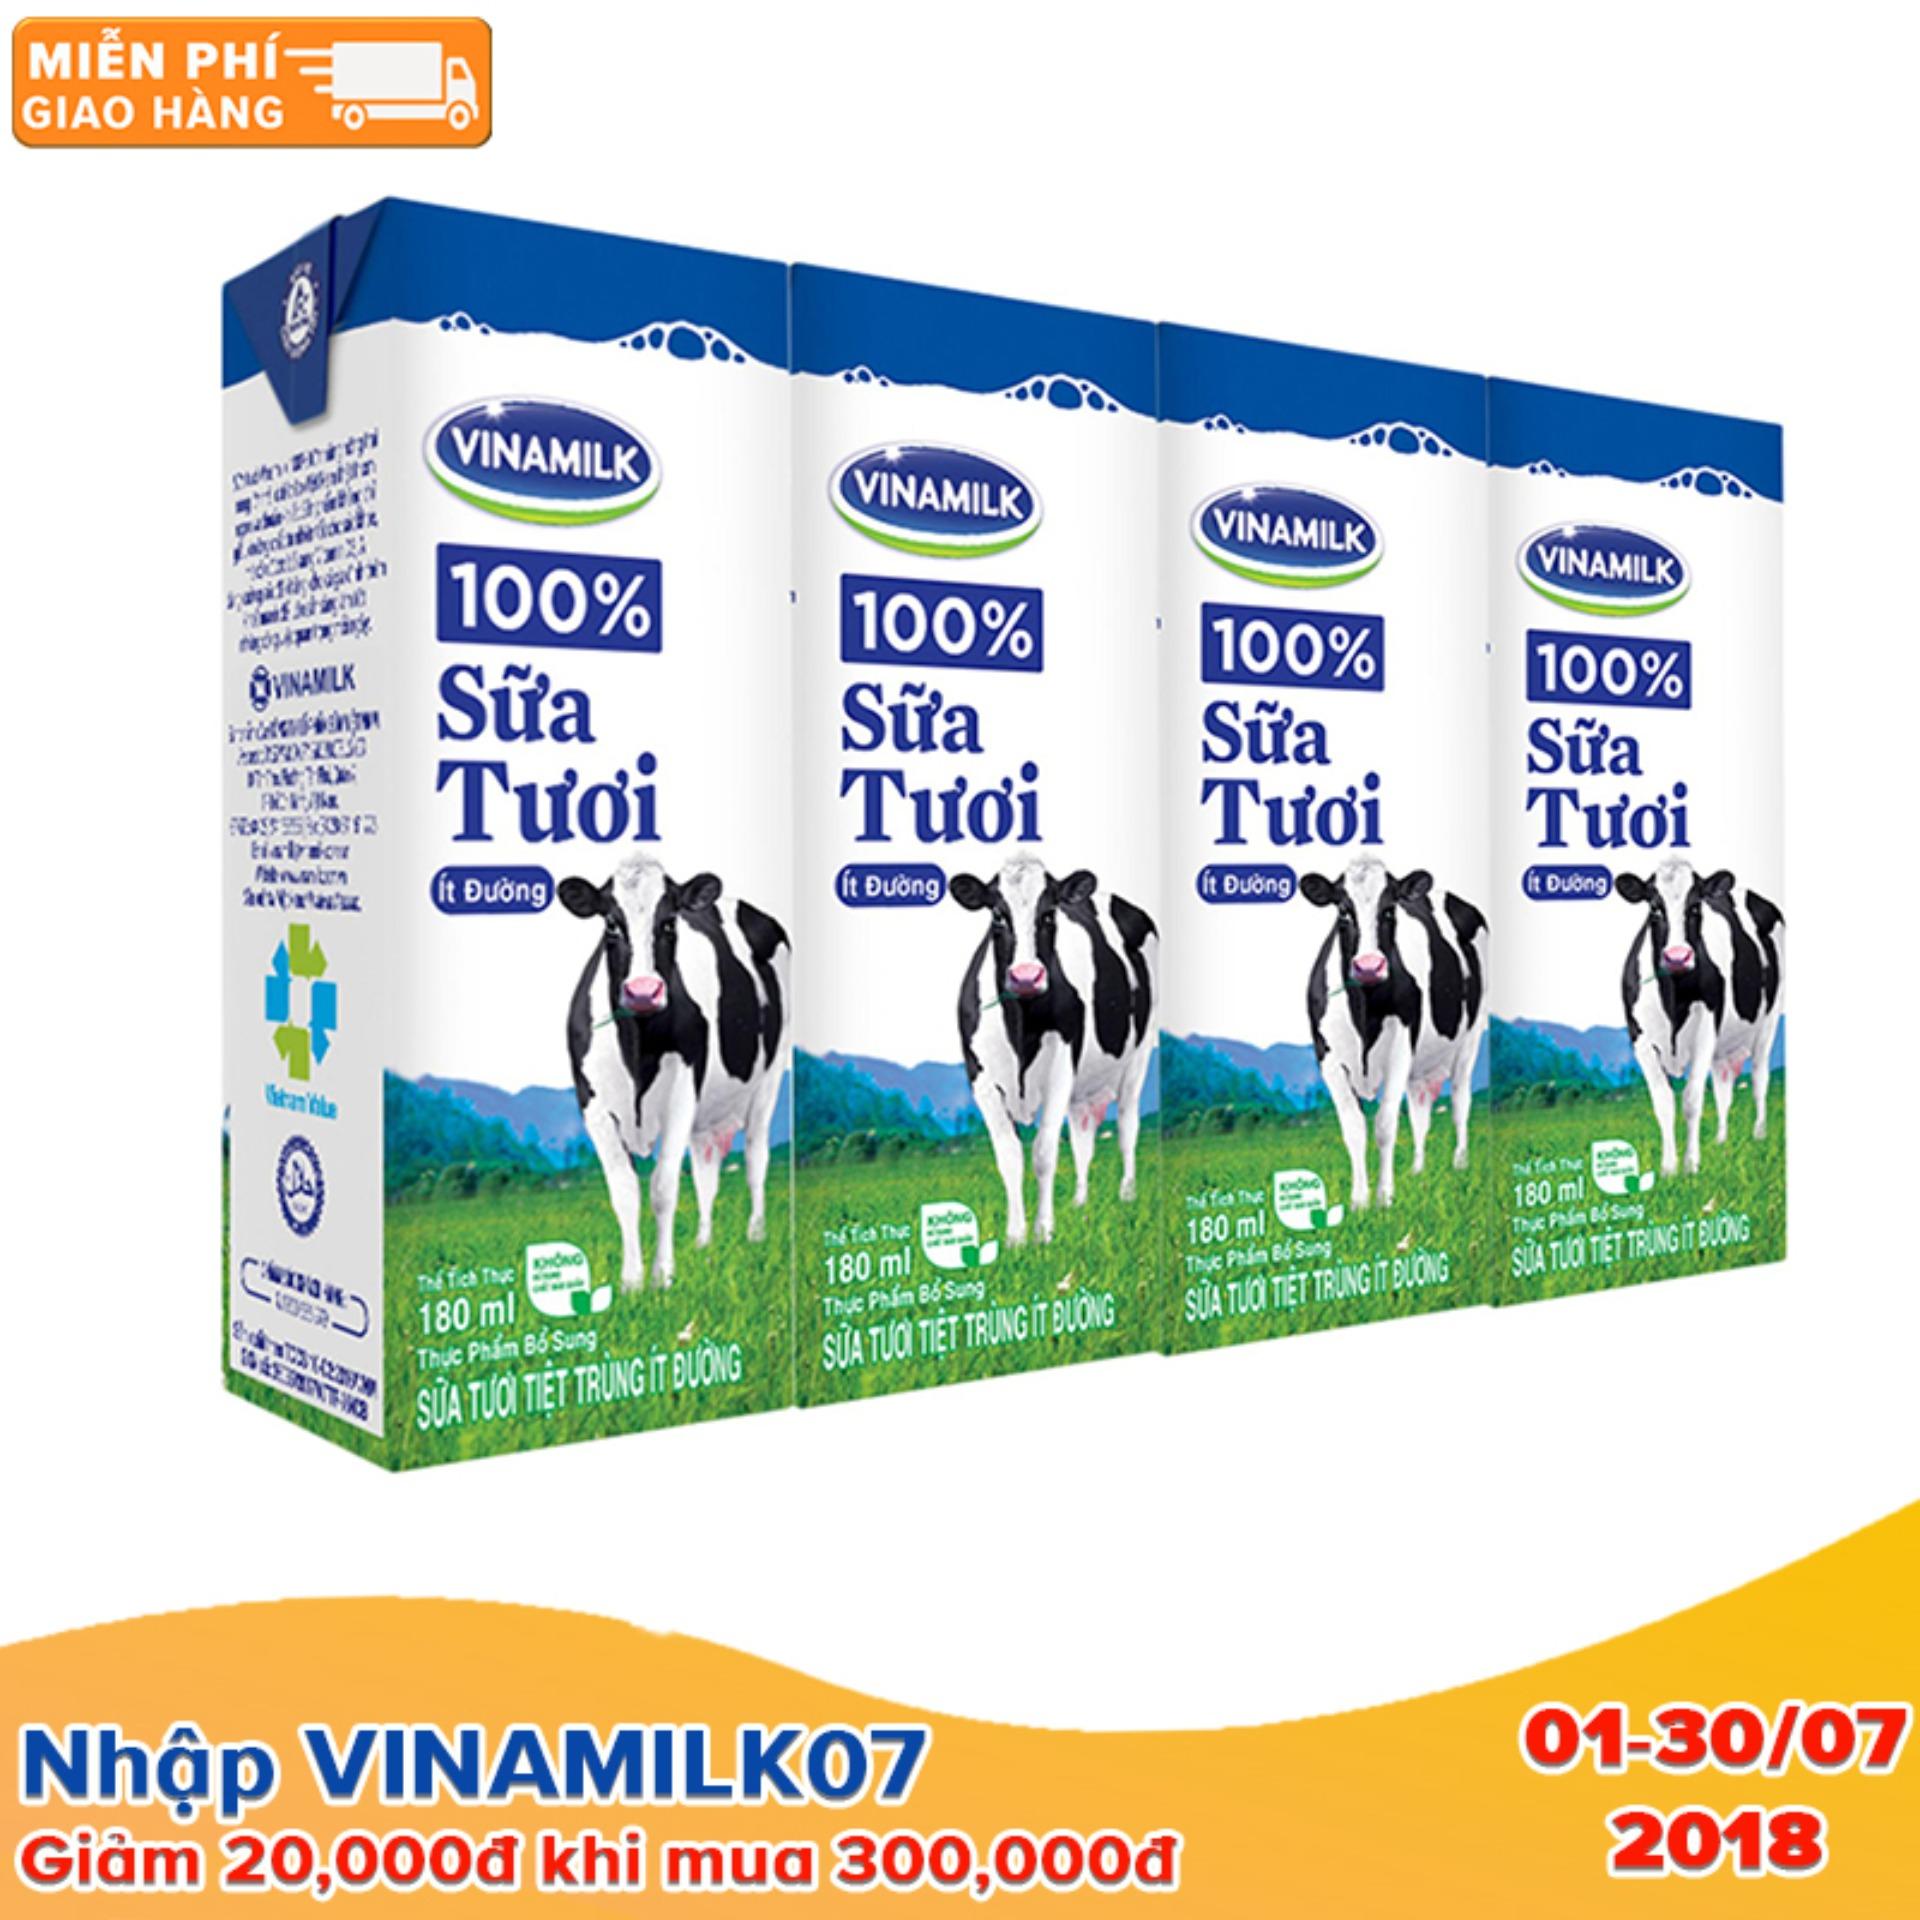 Thùng 48 Hộp Sữa tươi tiệt trùng Vinamilk 100% Ít Đường 180ml